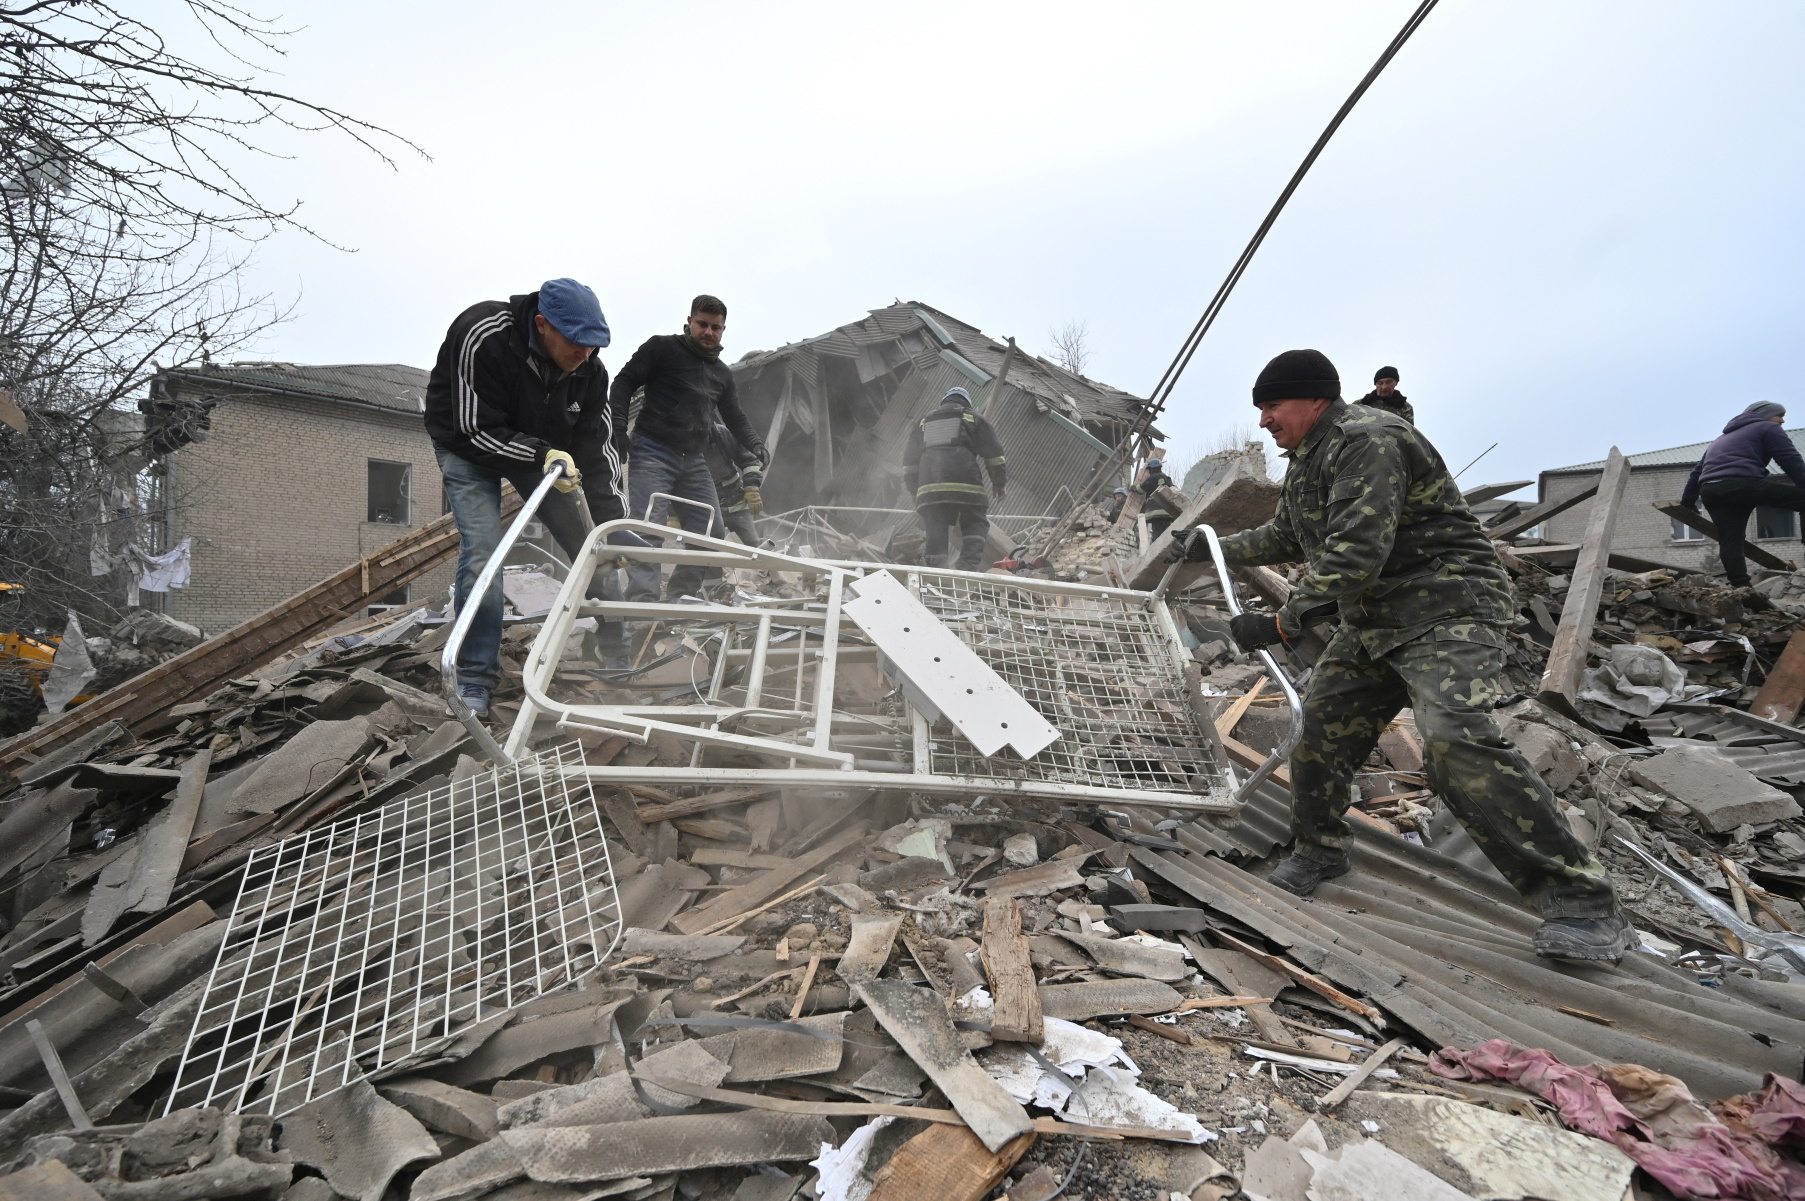 Πόλεμος στην Ουκρανία: Οι Ρώσοι σπέρνουν τρόμο είπε ο Ζελένσκι για τον φονικό βομβαρδισμό σε μαιευτήριο στη Ζαπορίζια